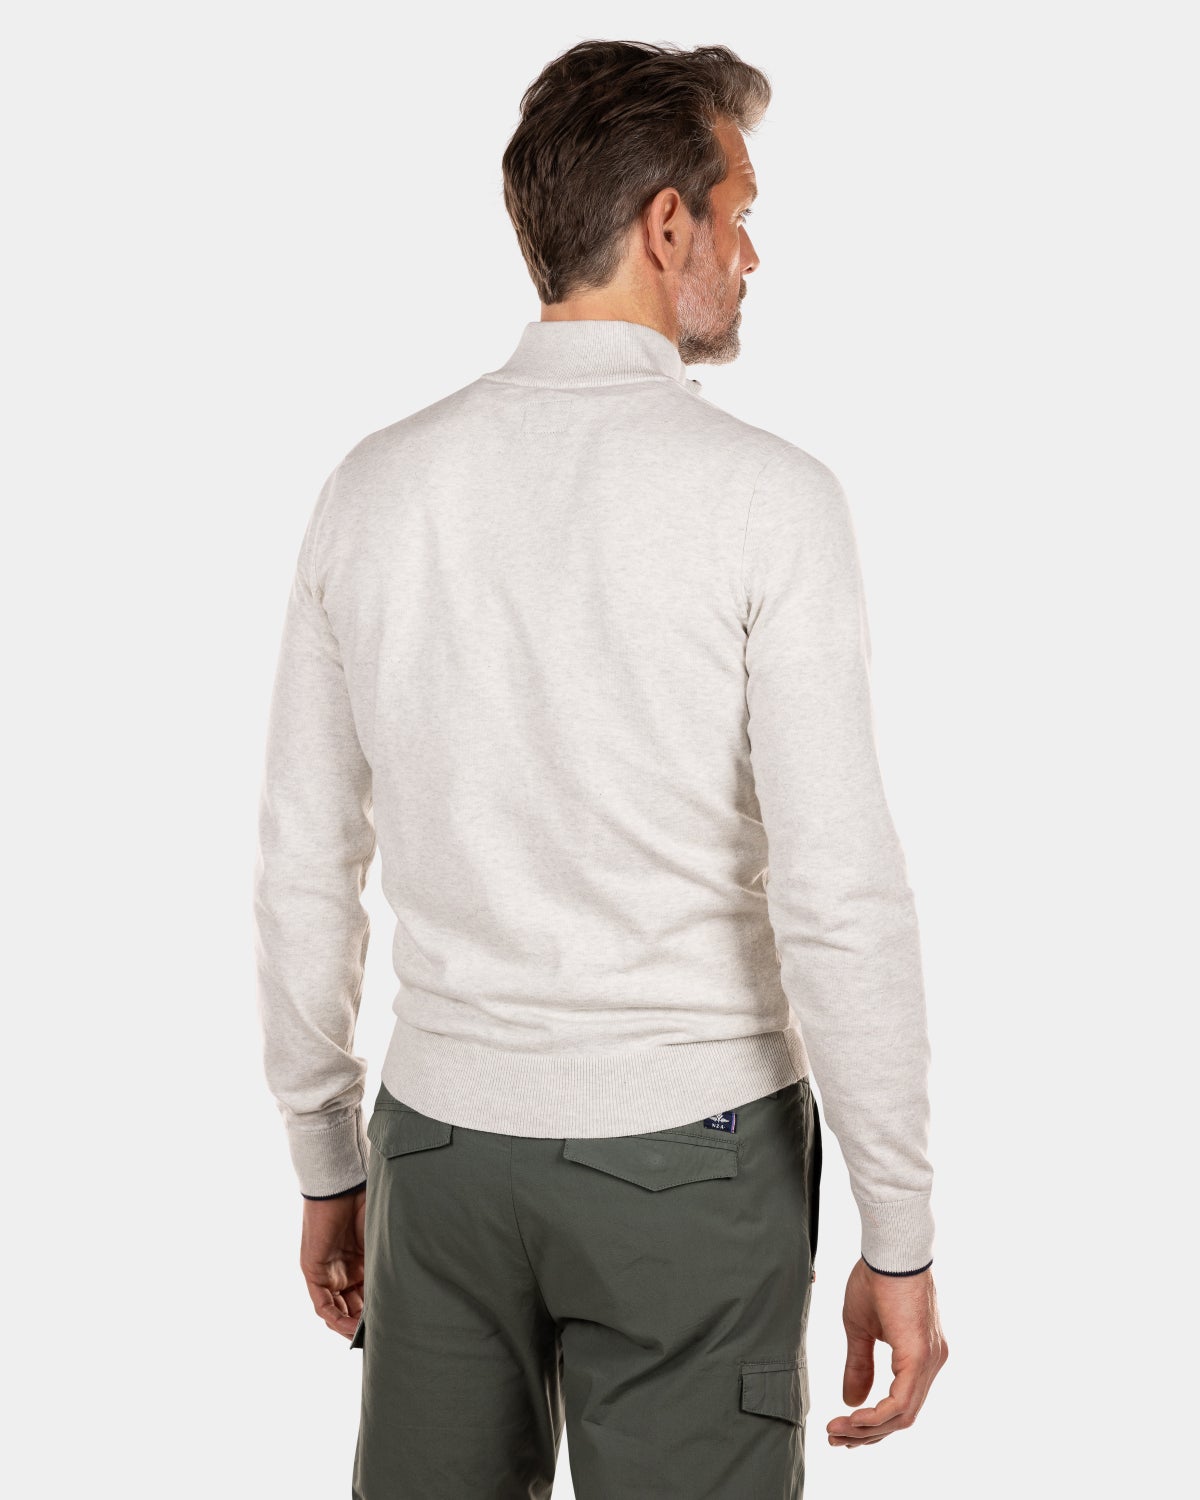 Solid coloured half zip sweater - Cream Melange